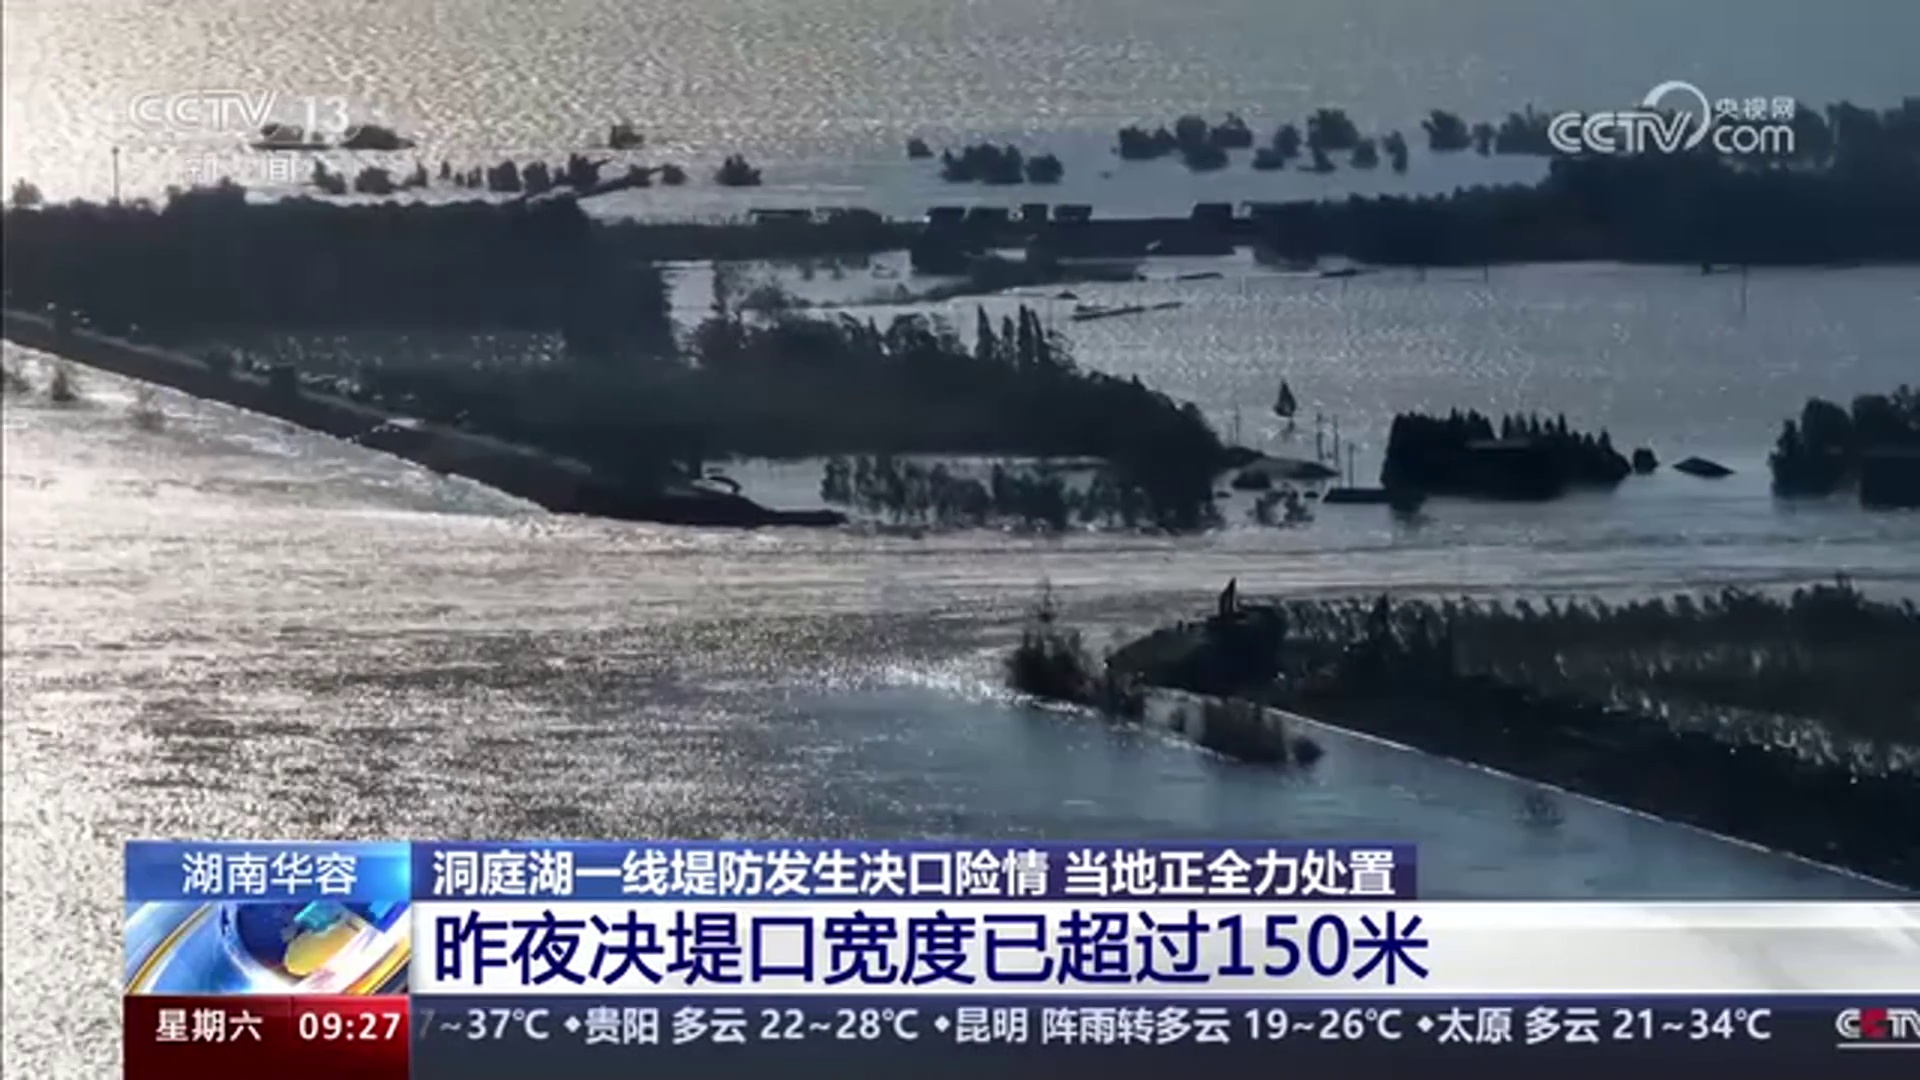 【央视·新闻直播间】湖南华容 堤防发生决口险情 当地正全力处置 